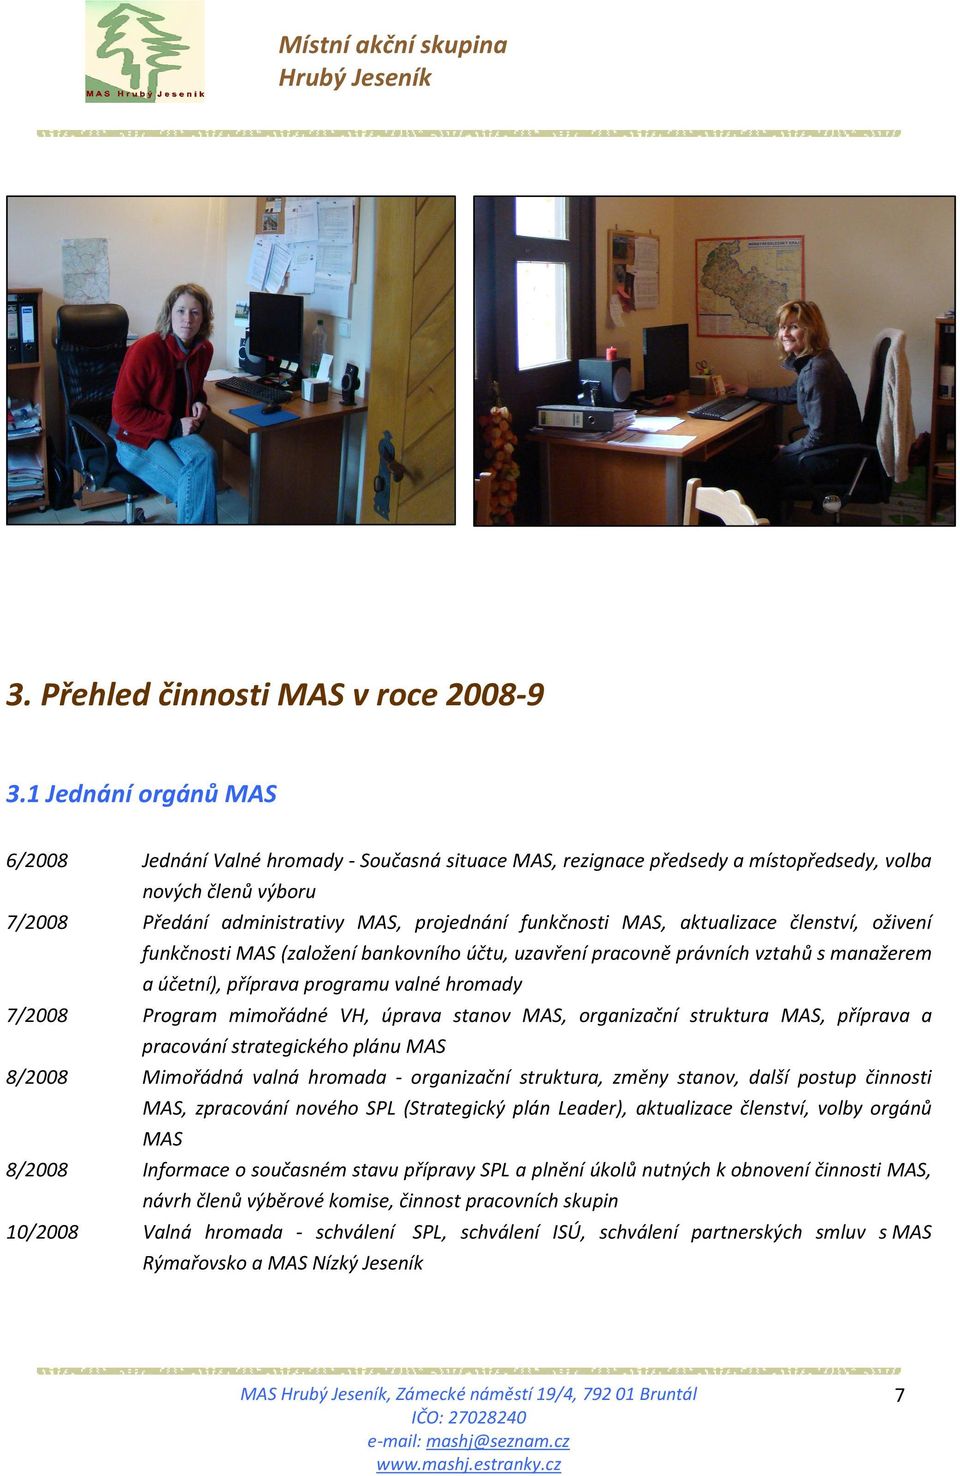 aktualizace členství, oživení funkčnosti MAS (založení bankovního účtu, uzavření pracovně právních vztahů s manažerem a účetní), příprava programu valné hromady 7/2008 Program mimořádné VH, úprava